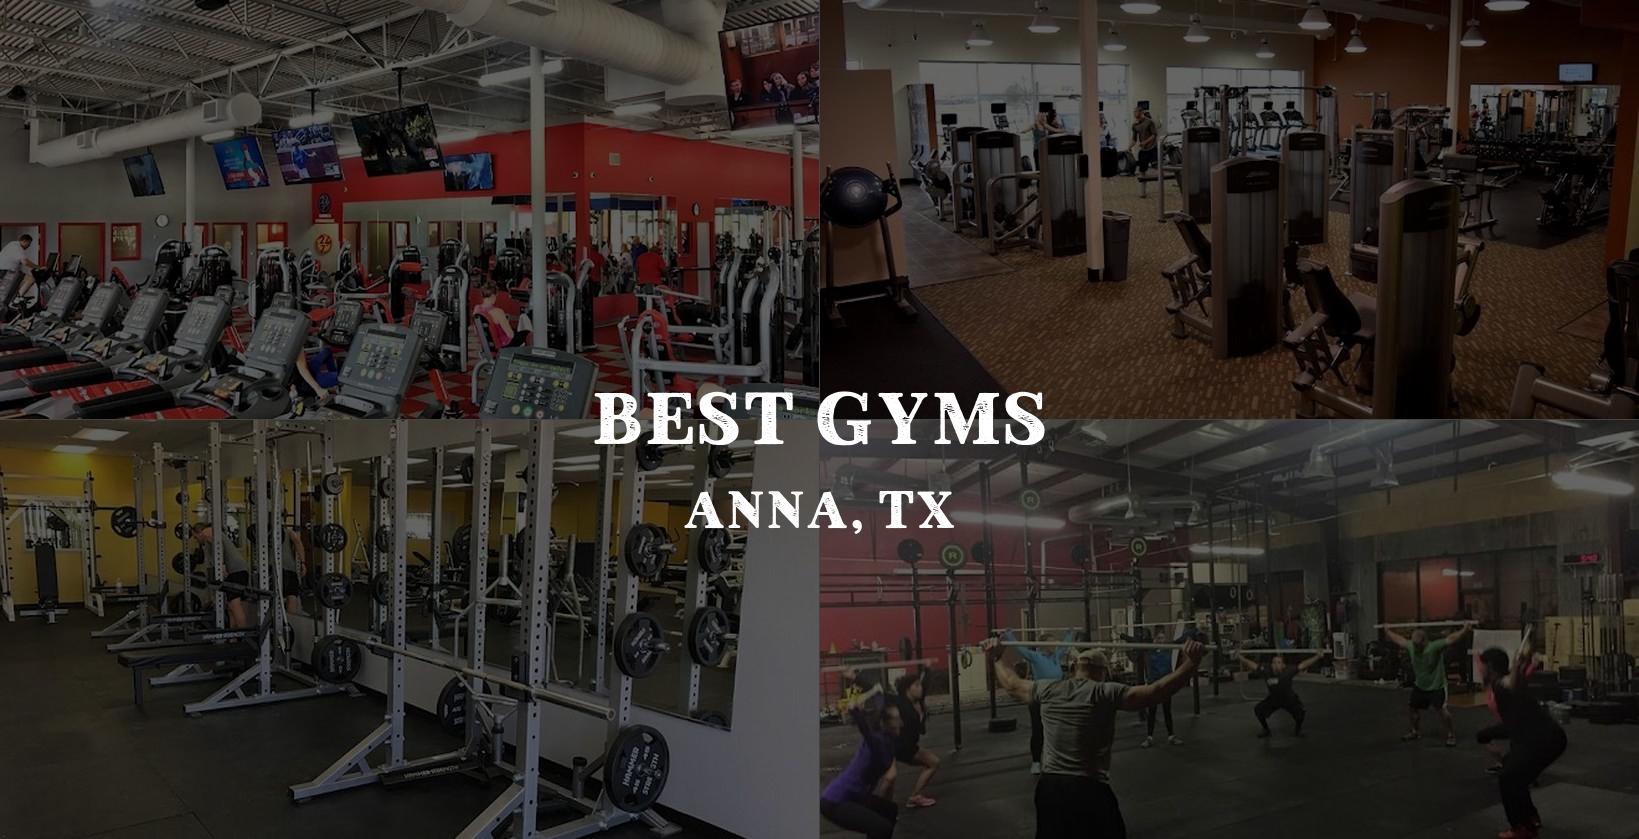 Best gyms in anna, tx